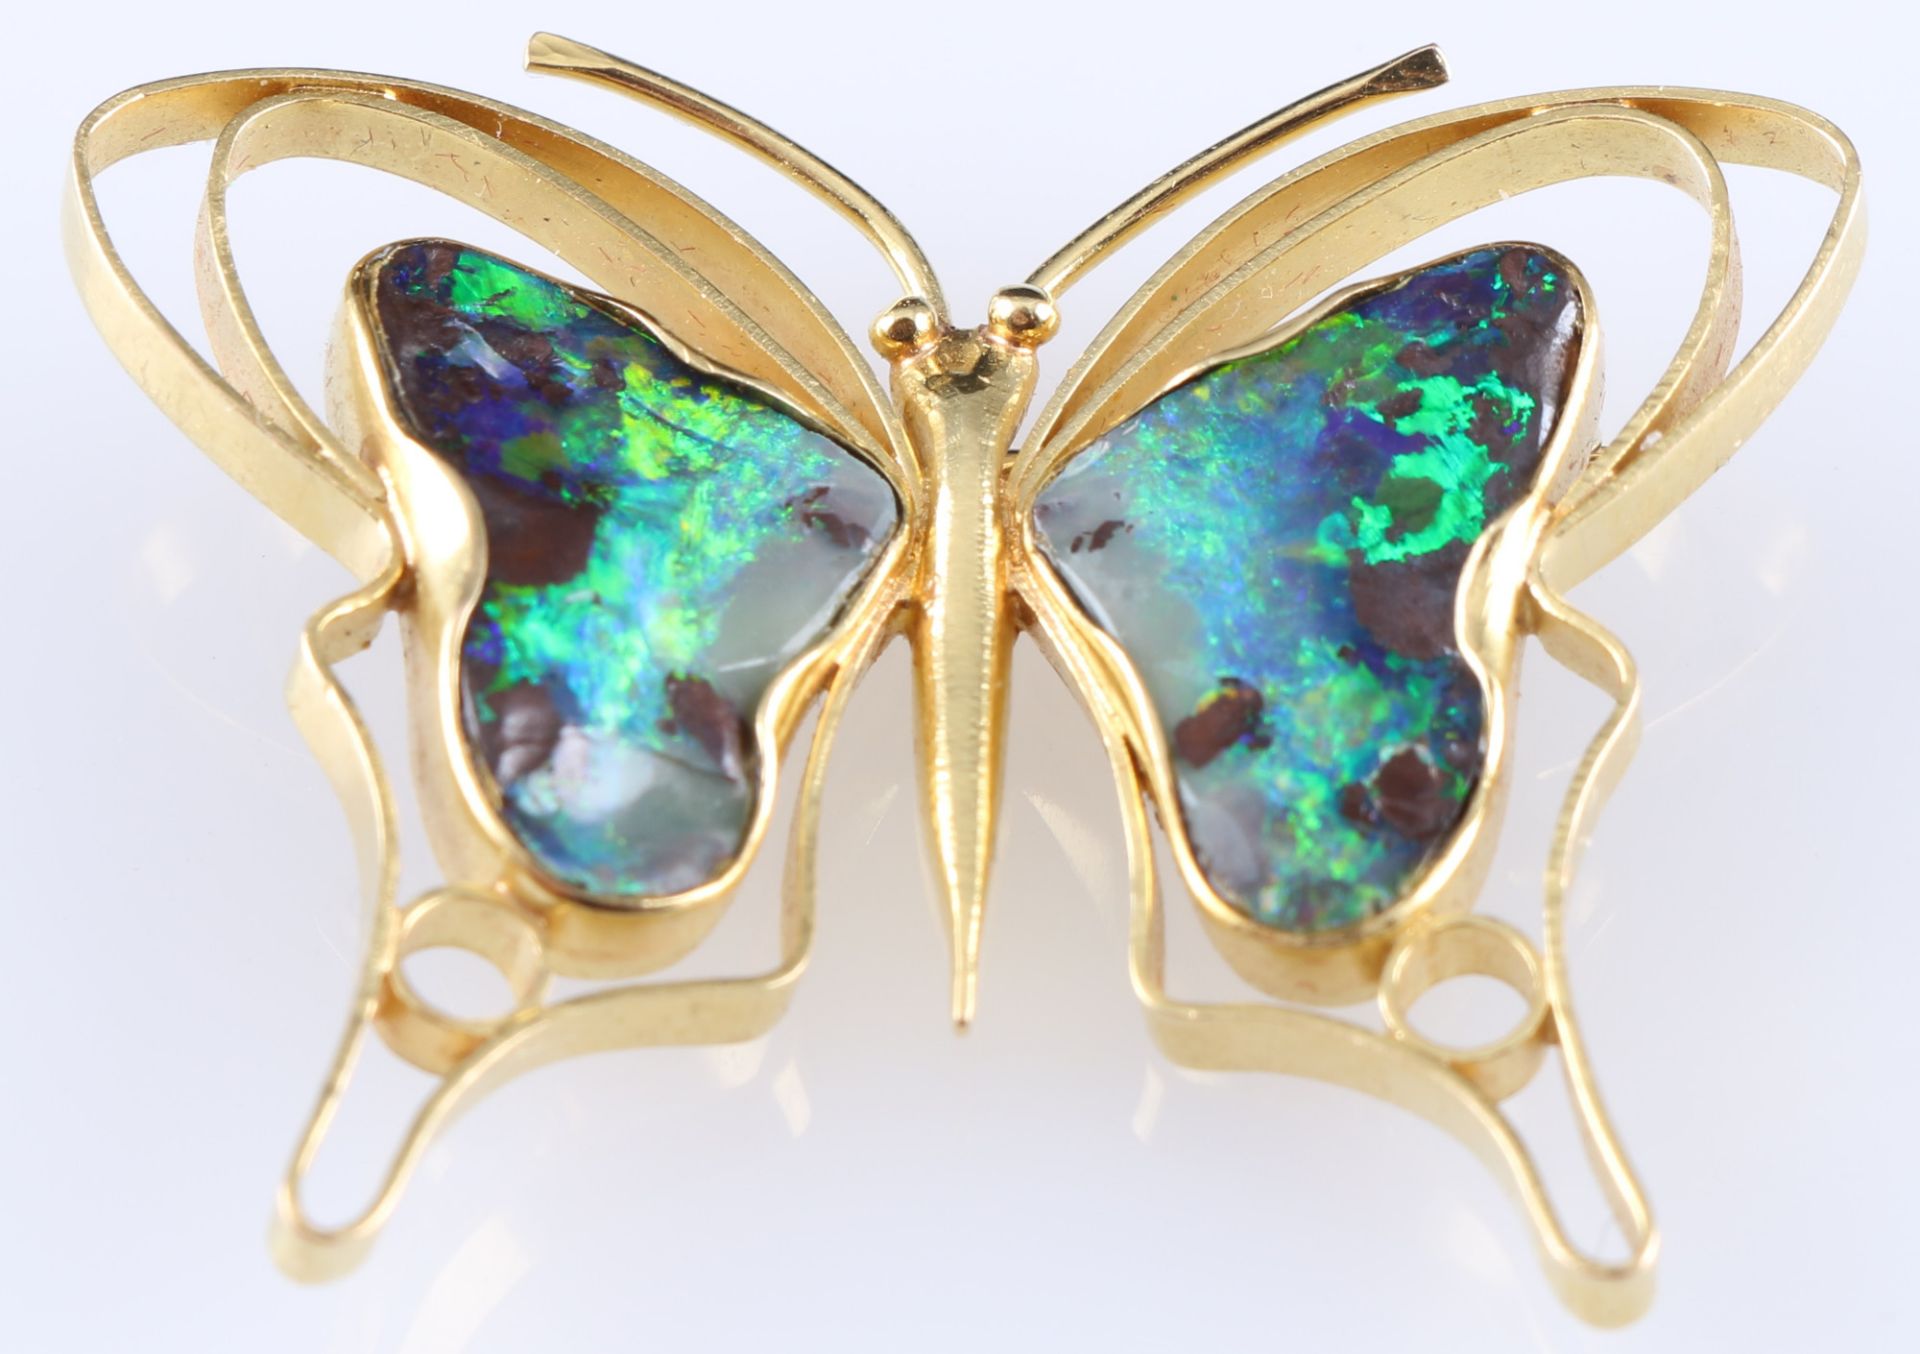 750 Gold Schmetterling Brosche mit Boulder Opalen, 18K gold butterfly brooch with boulder opals, - Bild 2 aus 3